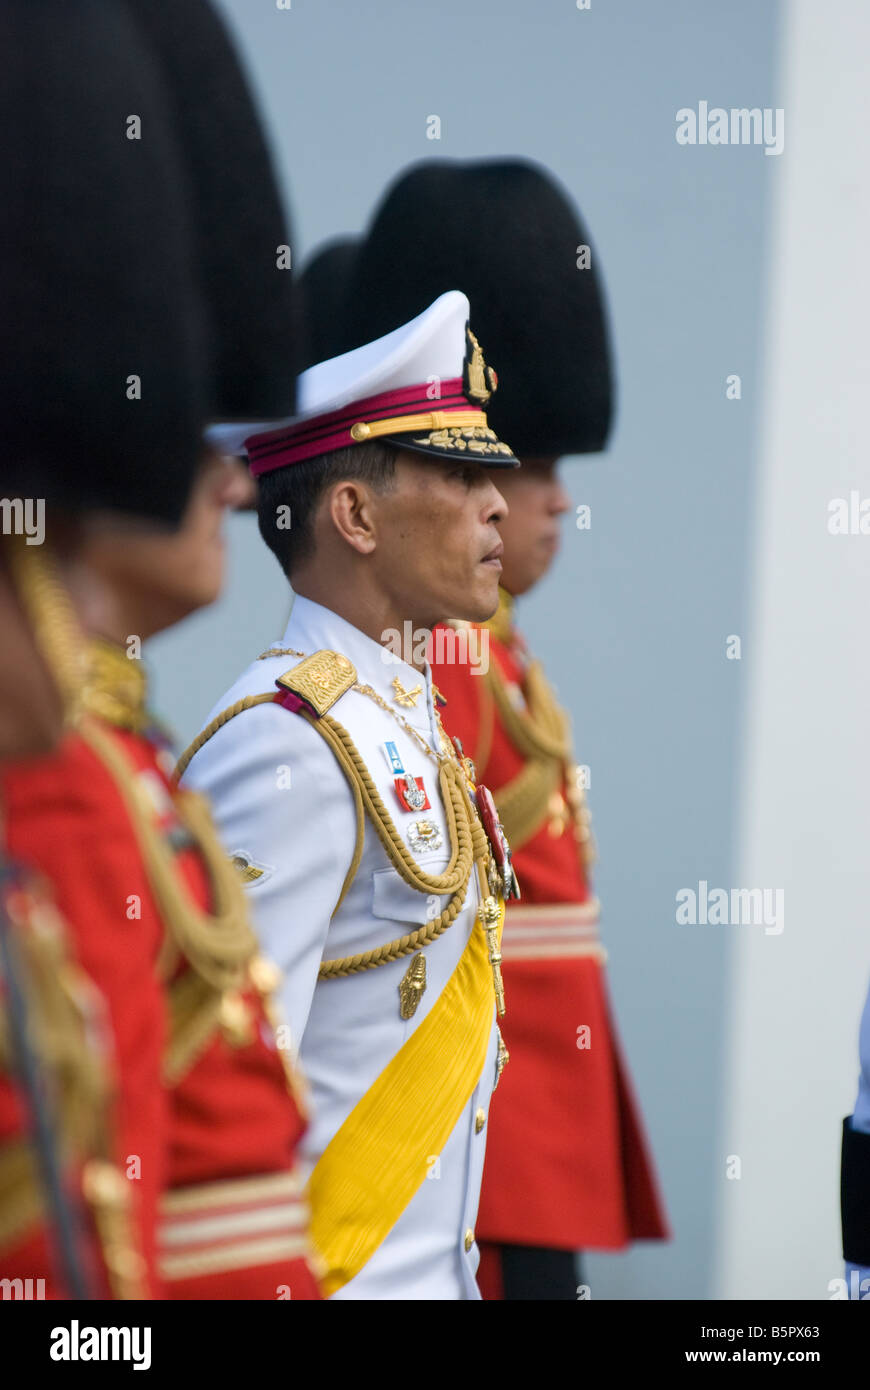 His Royal Highness Prince Maha Vajiralongkorn the Crown Prince of Thailand Stock Photo